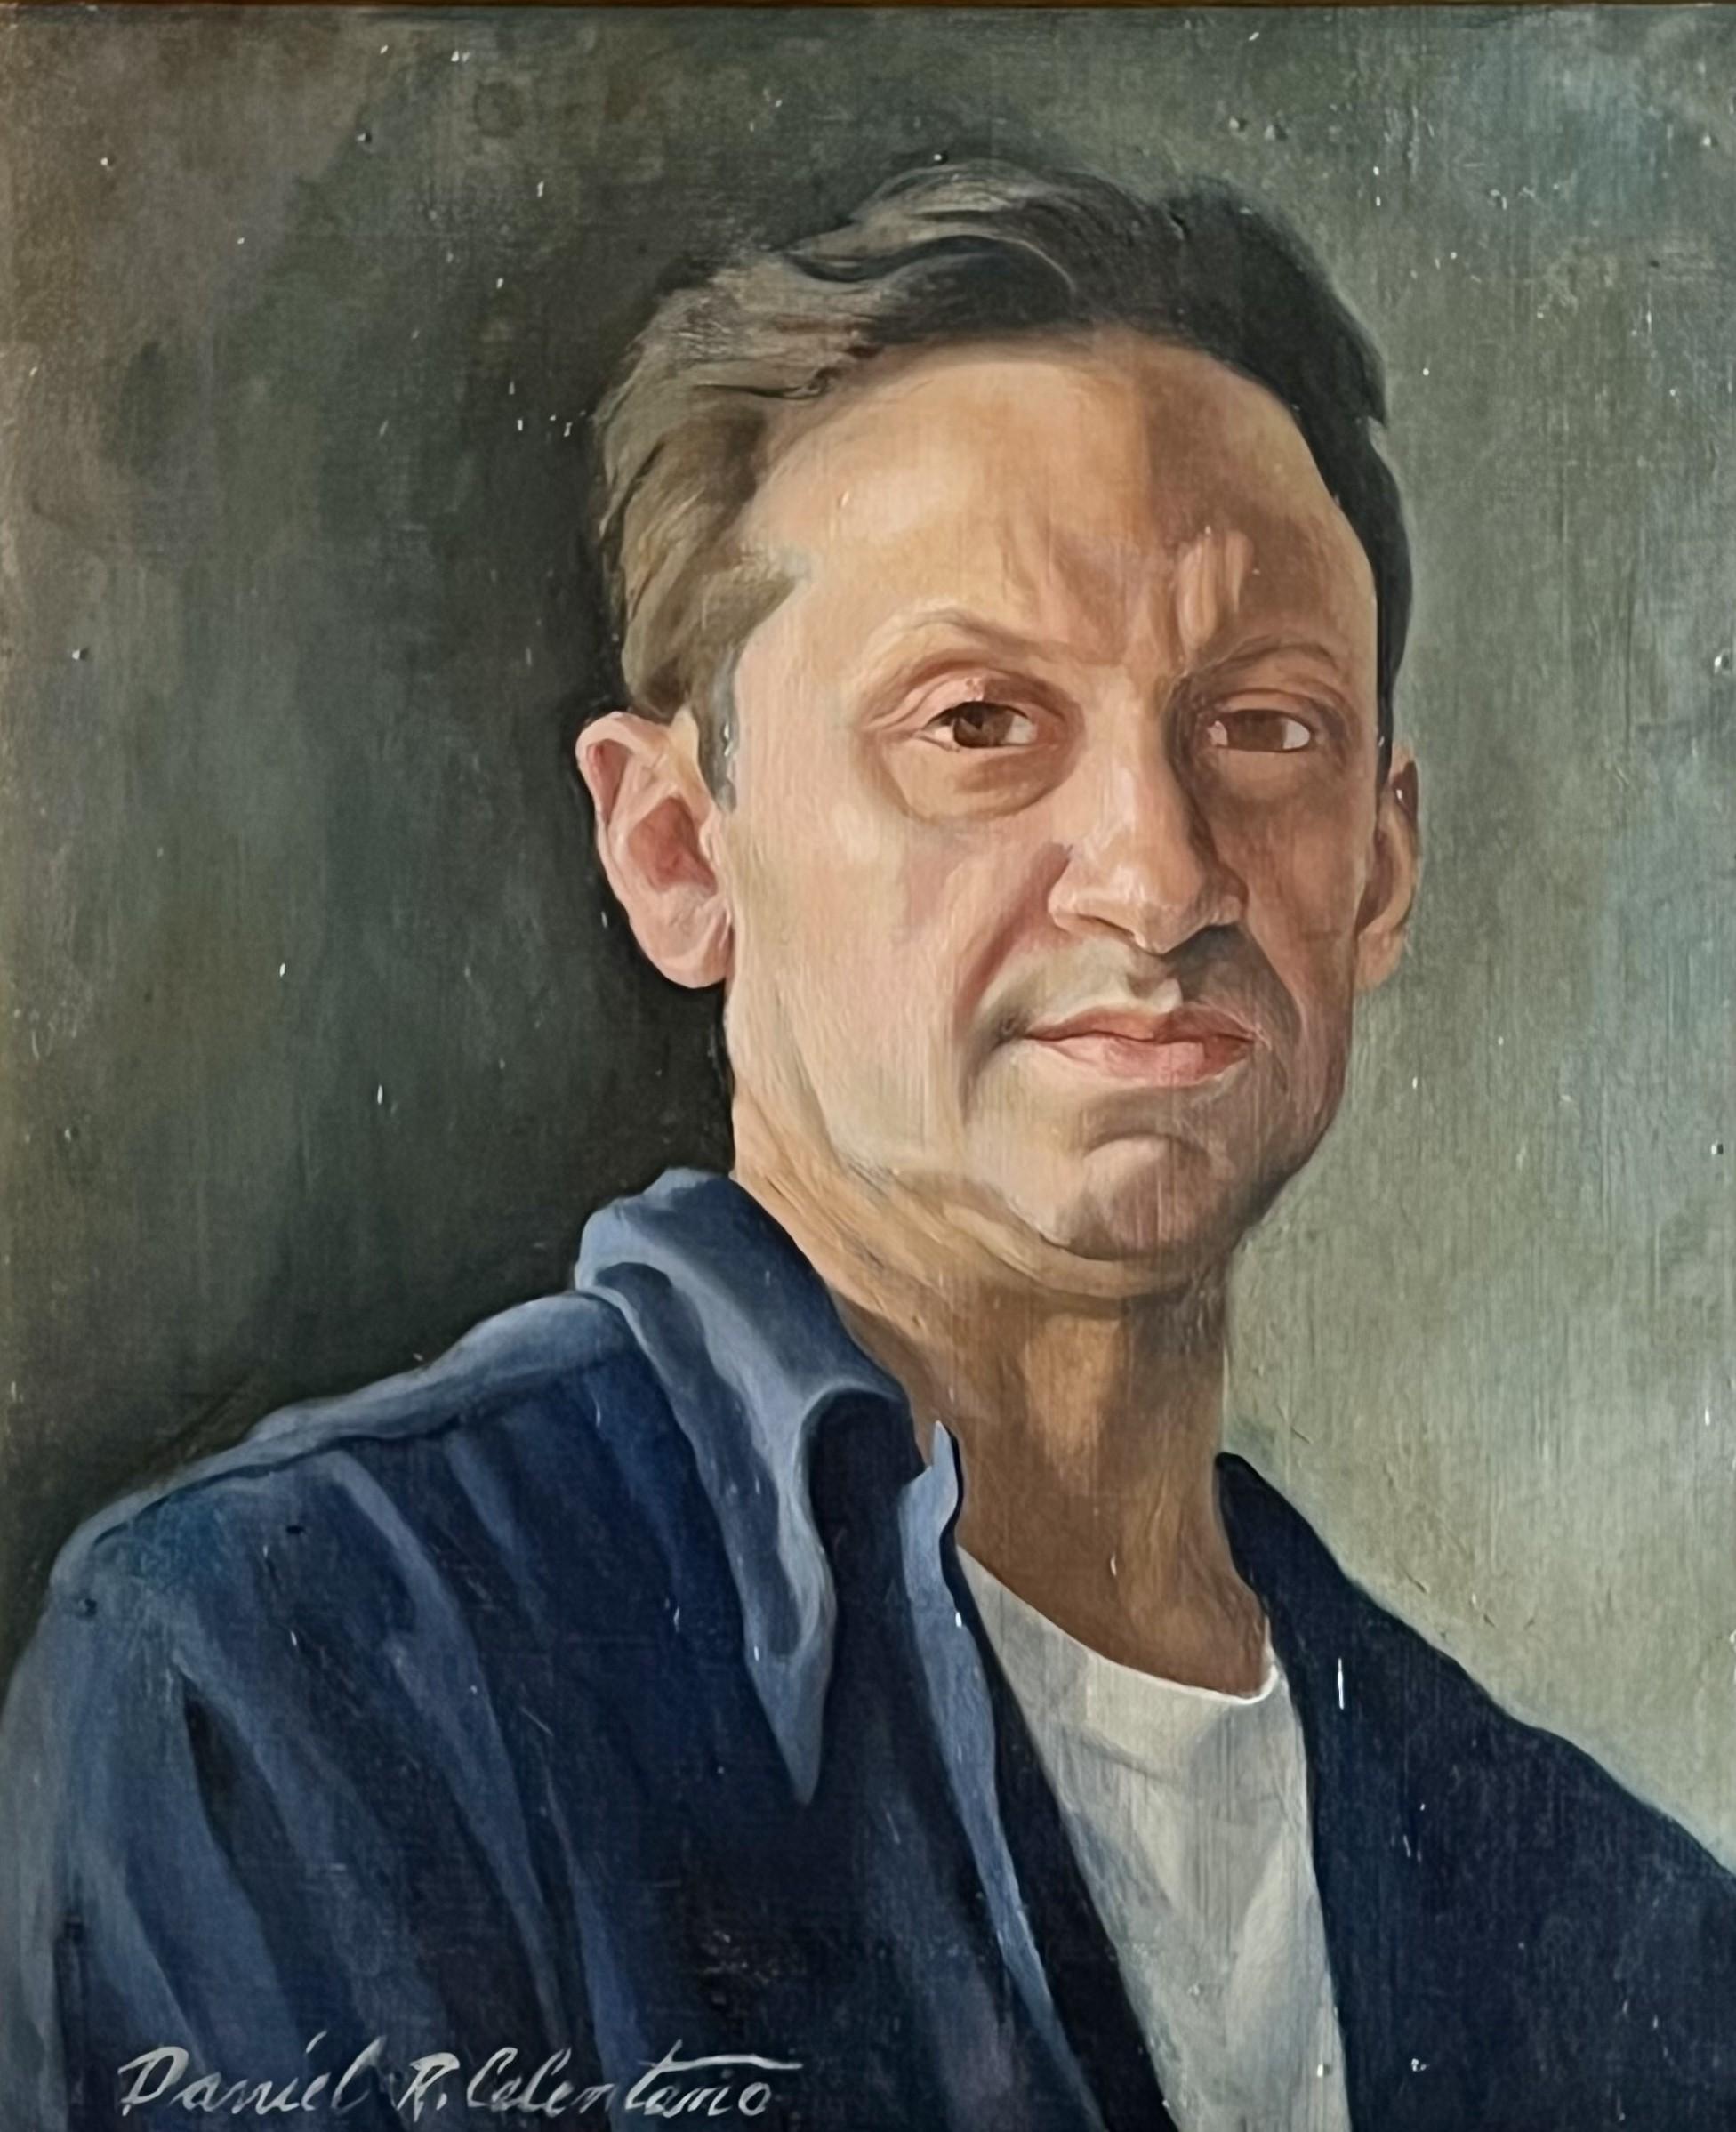 Daniel Ralph Celentano Portrait Painting - Self Portrait